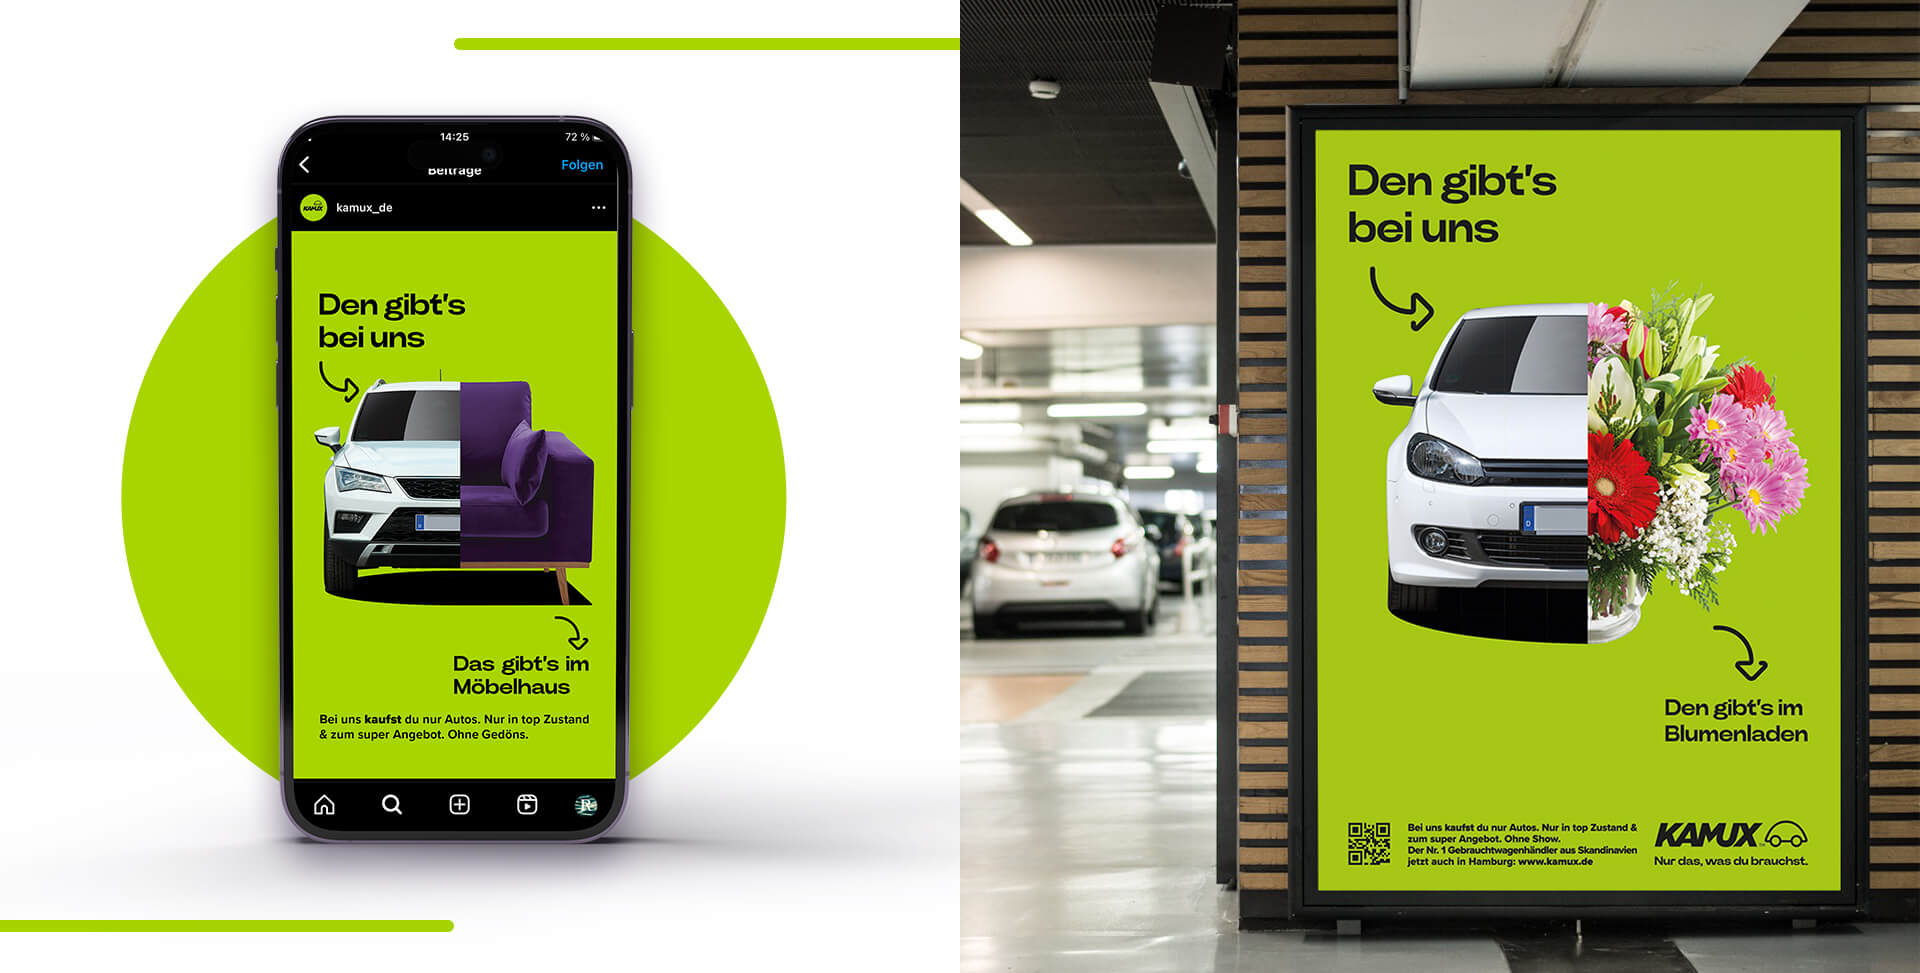 Marketingstrategie für Kamux: Social Media Marketing Anzeigen und Citylight Poster im Parkhaus eines Einkaufszentrums 